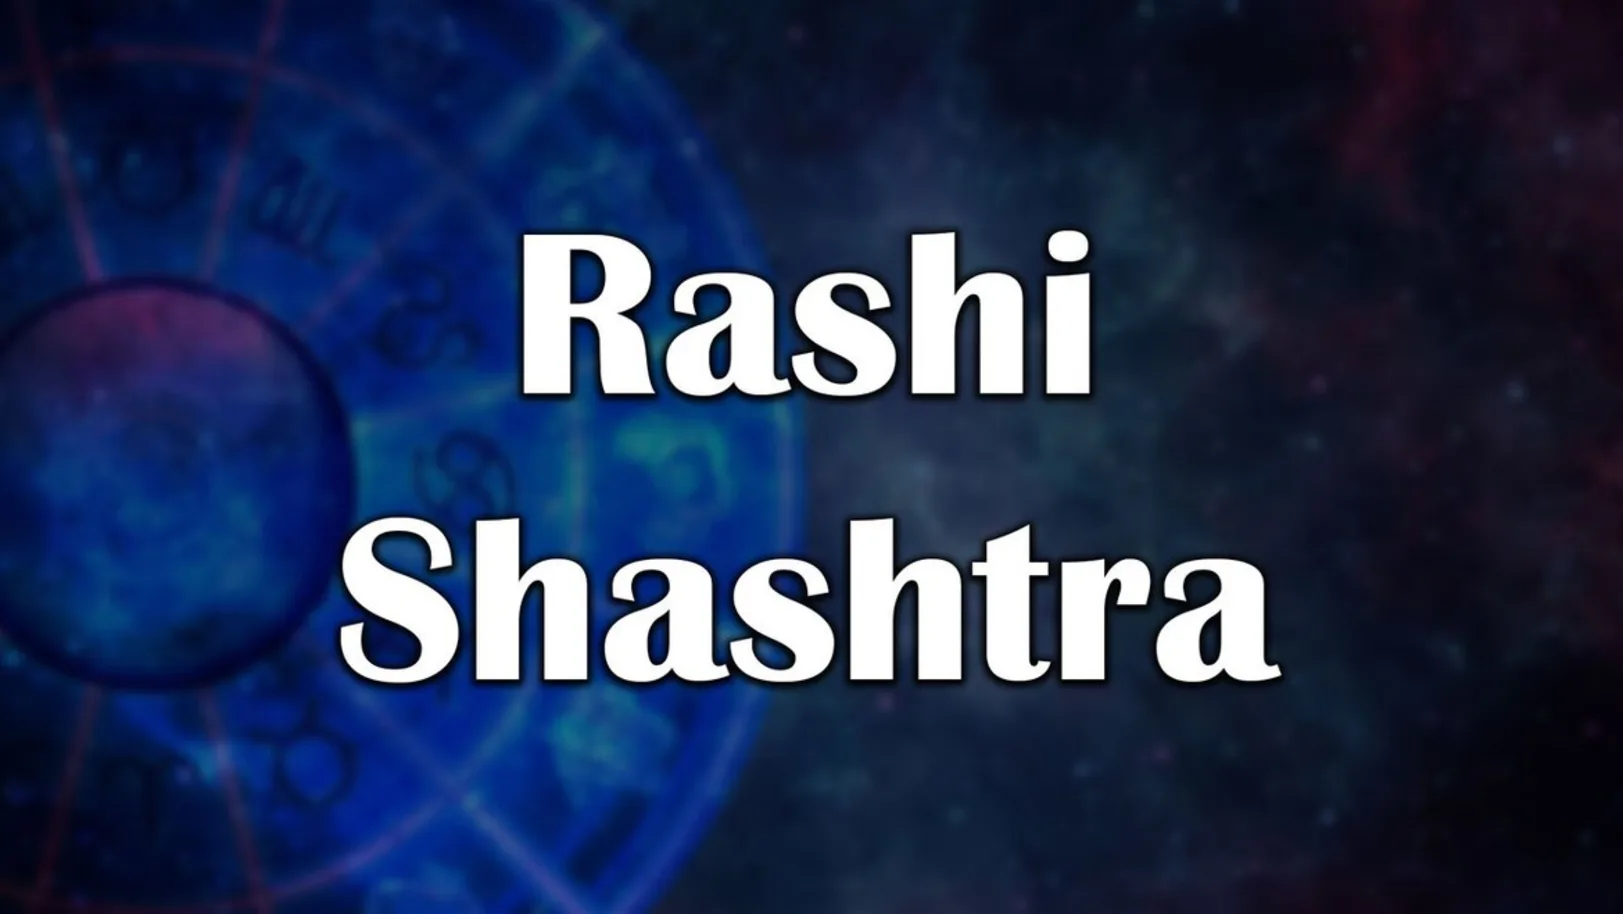 Rashi Shashtra Streaming Now On Zee Marathi